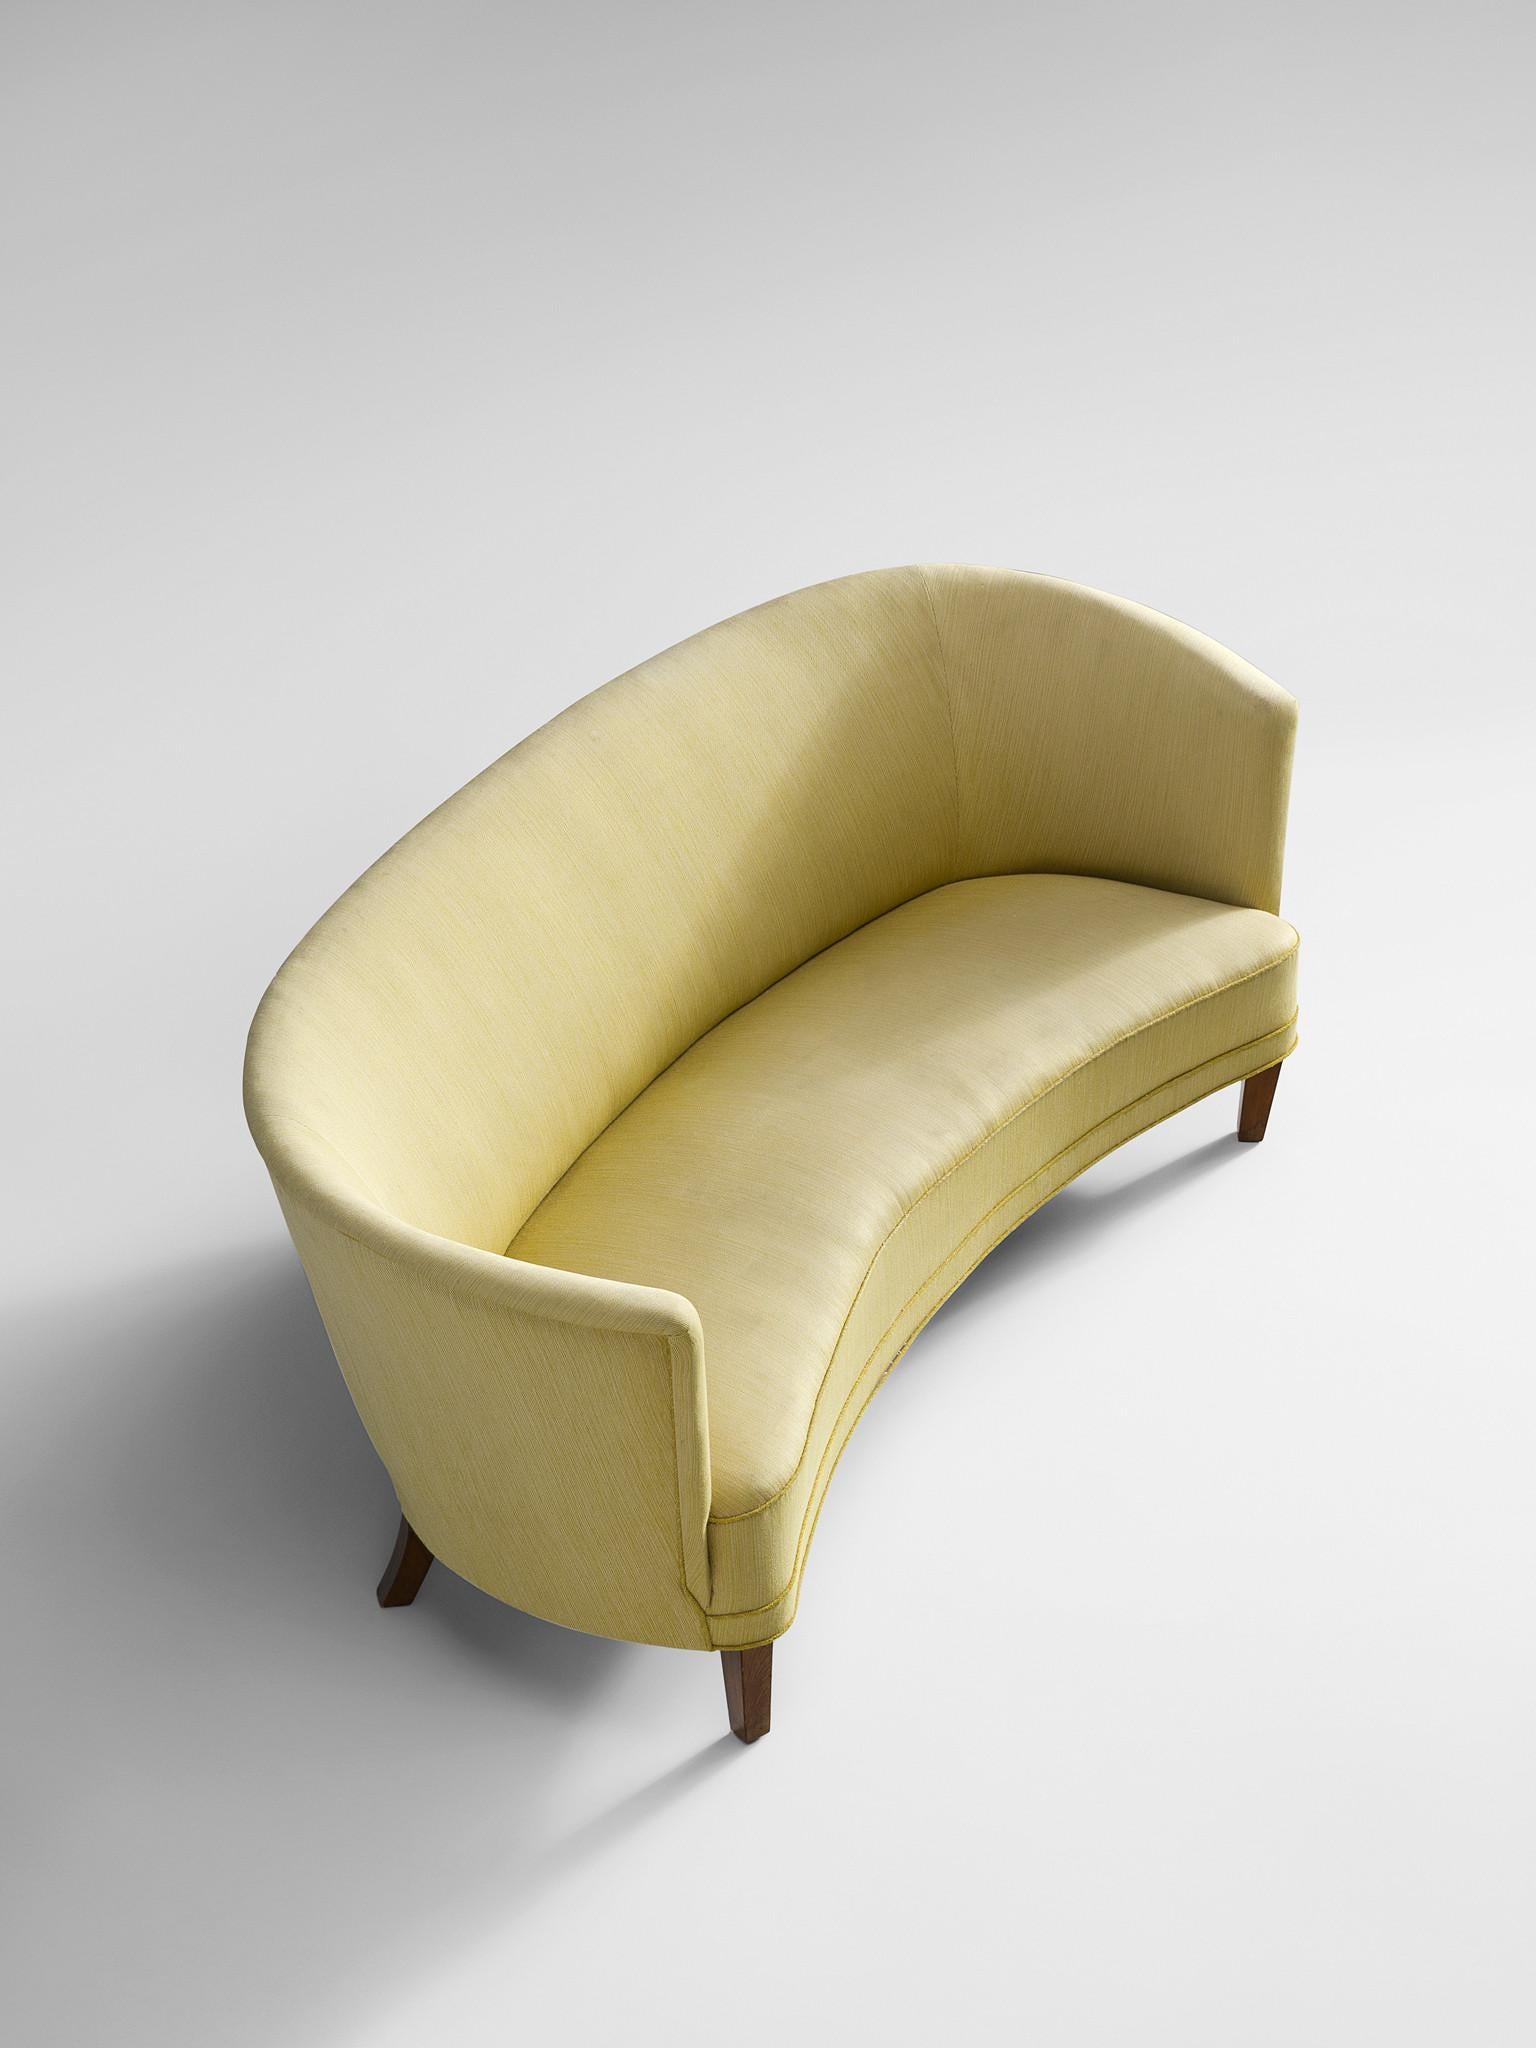 Mid-20th Century Danish Art Deco 'Banana' Sofa in Yellow Upholstery